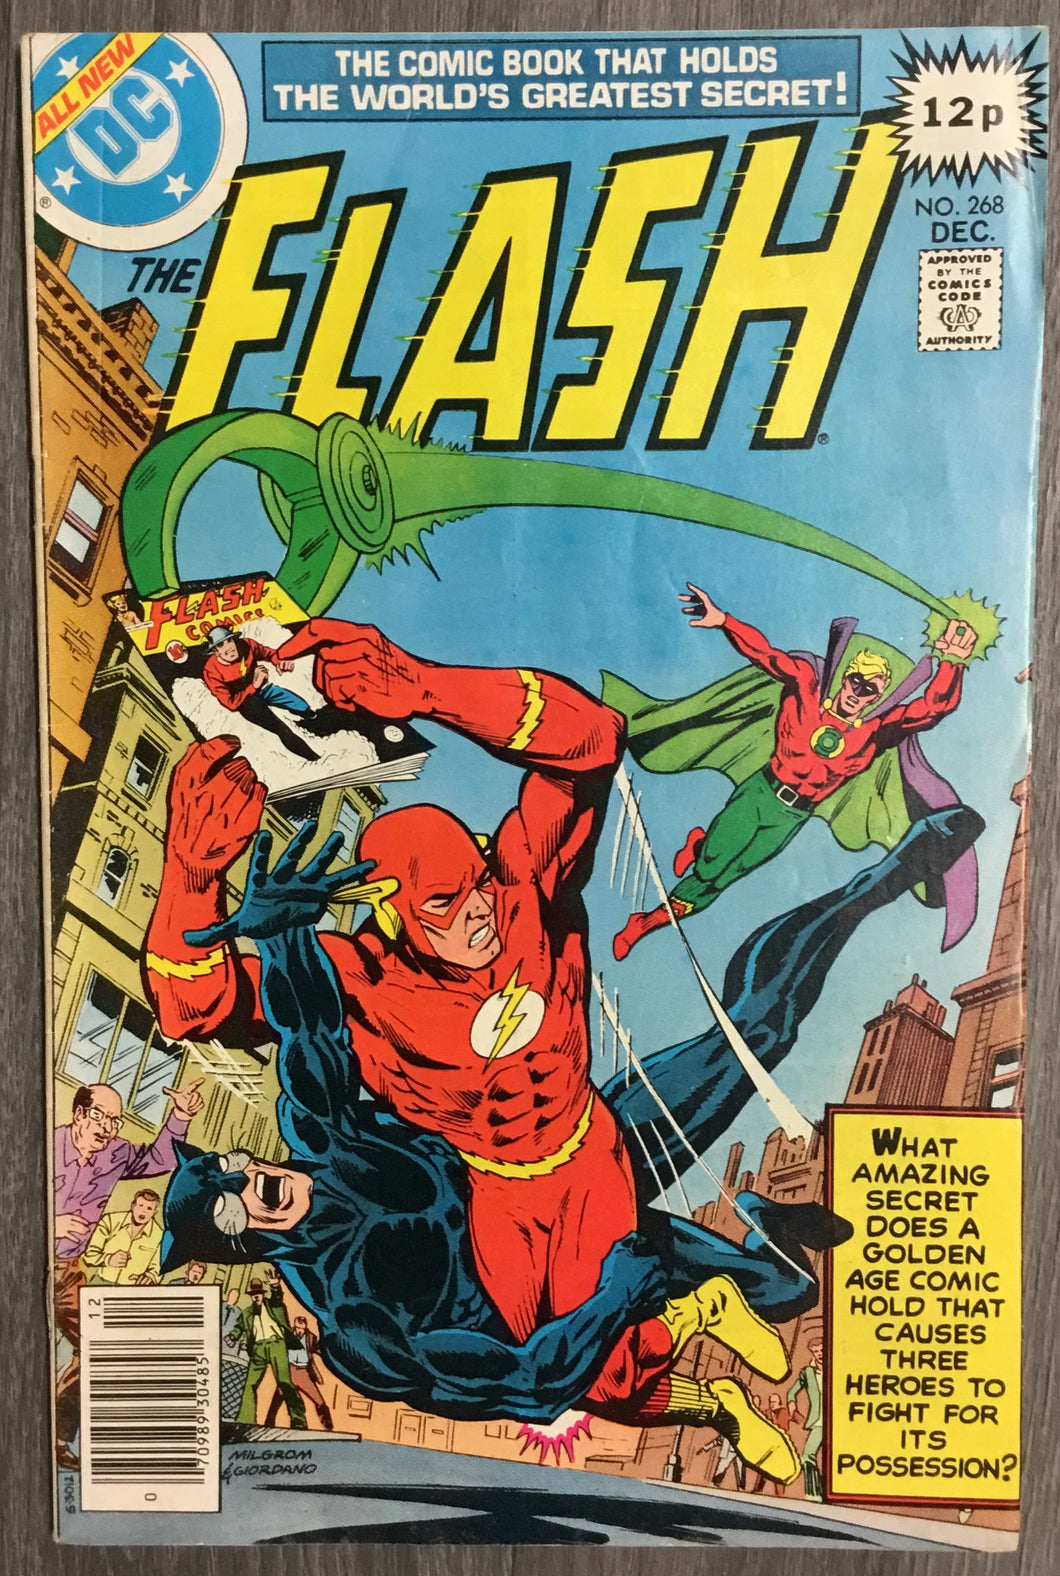 The Flash No. #268 1978 DC Comics